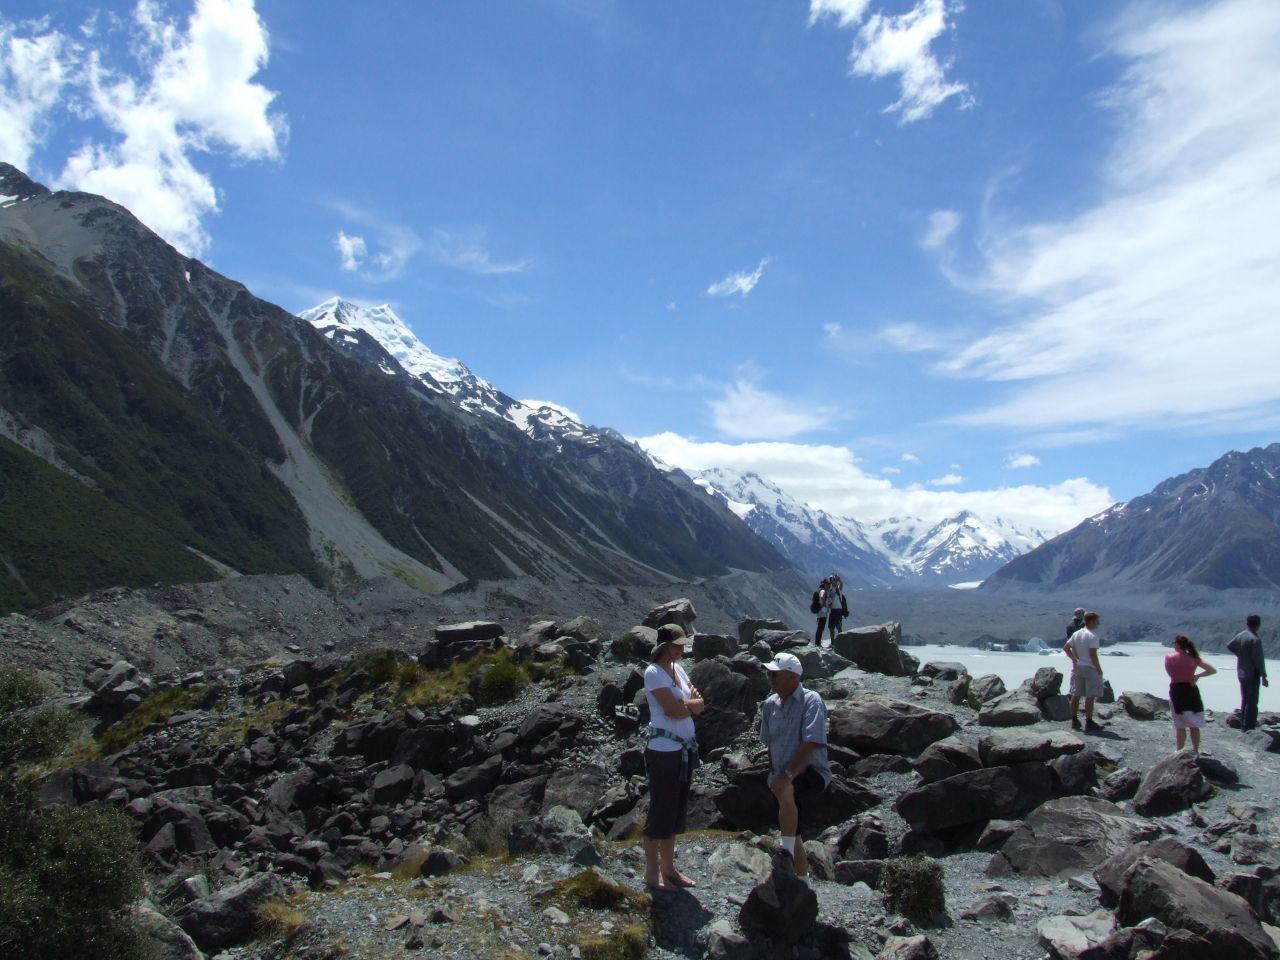 Tasman Glacier lookout was quite busy